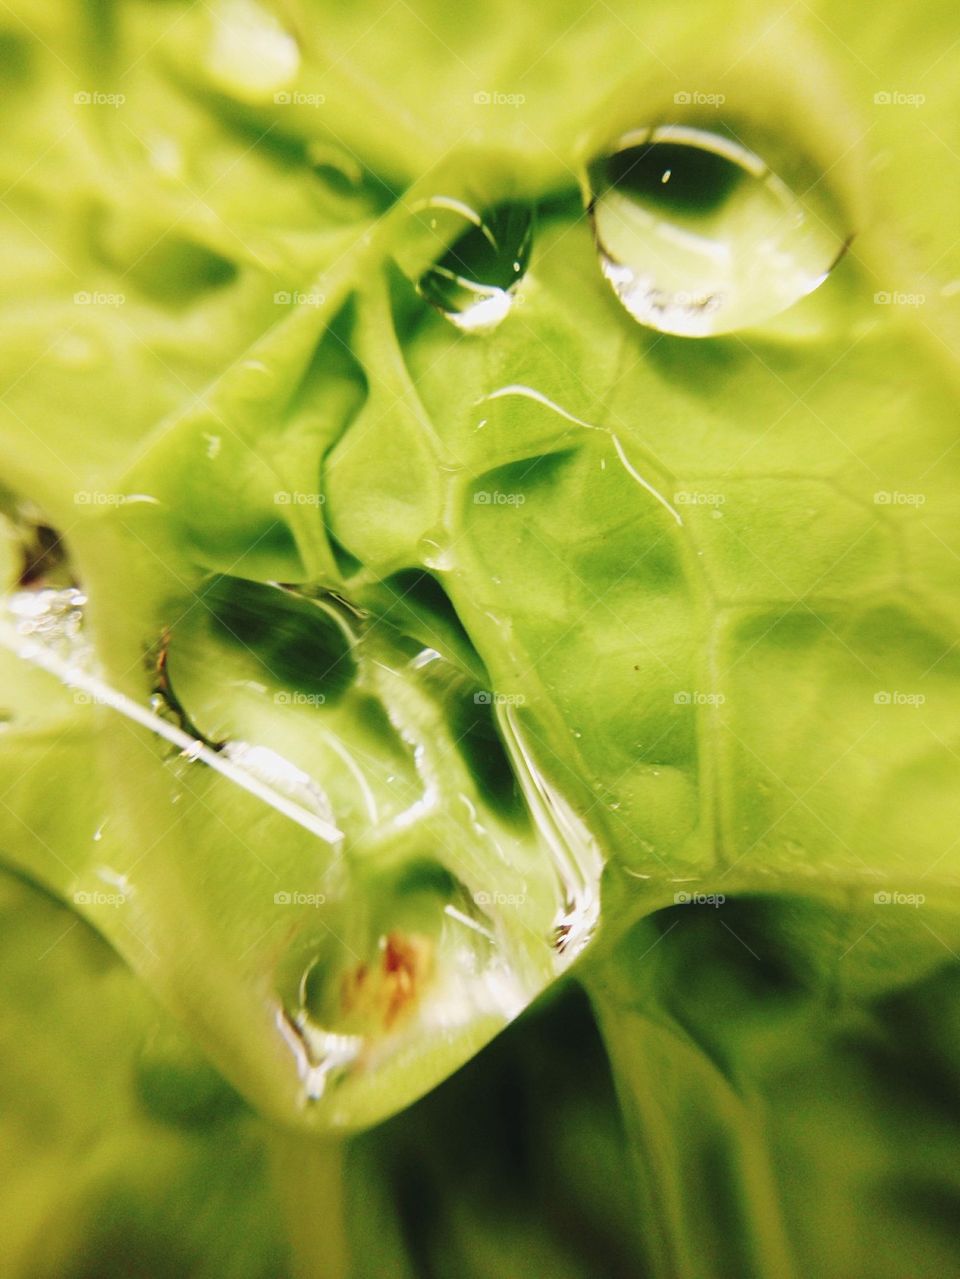 Water drops on lettuce